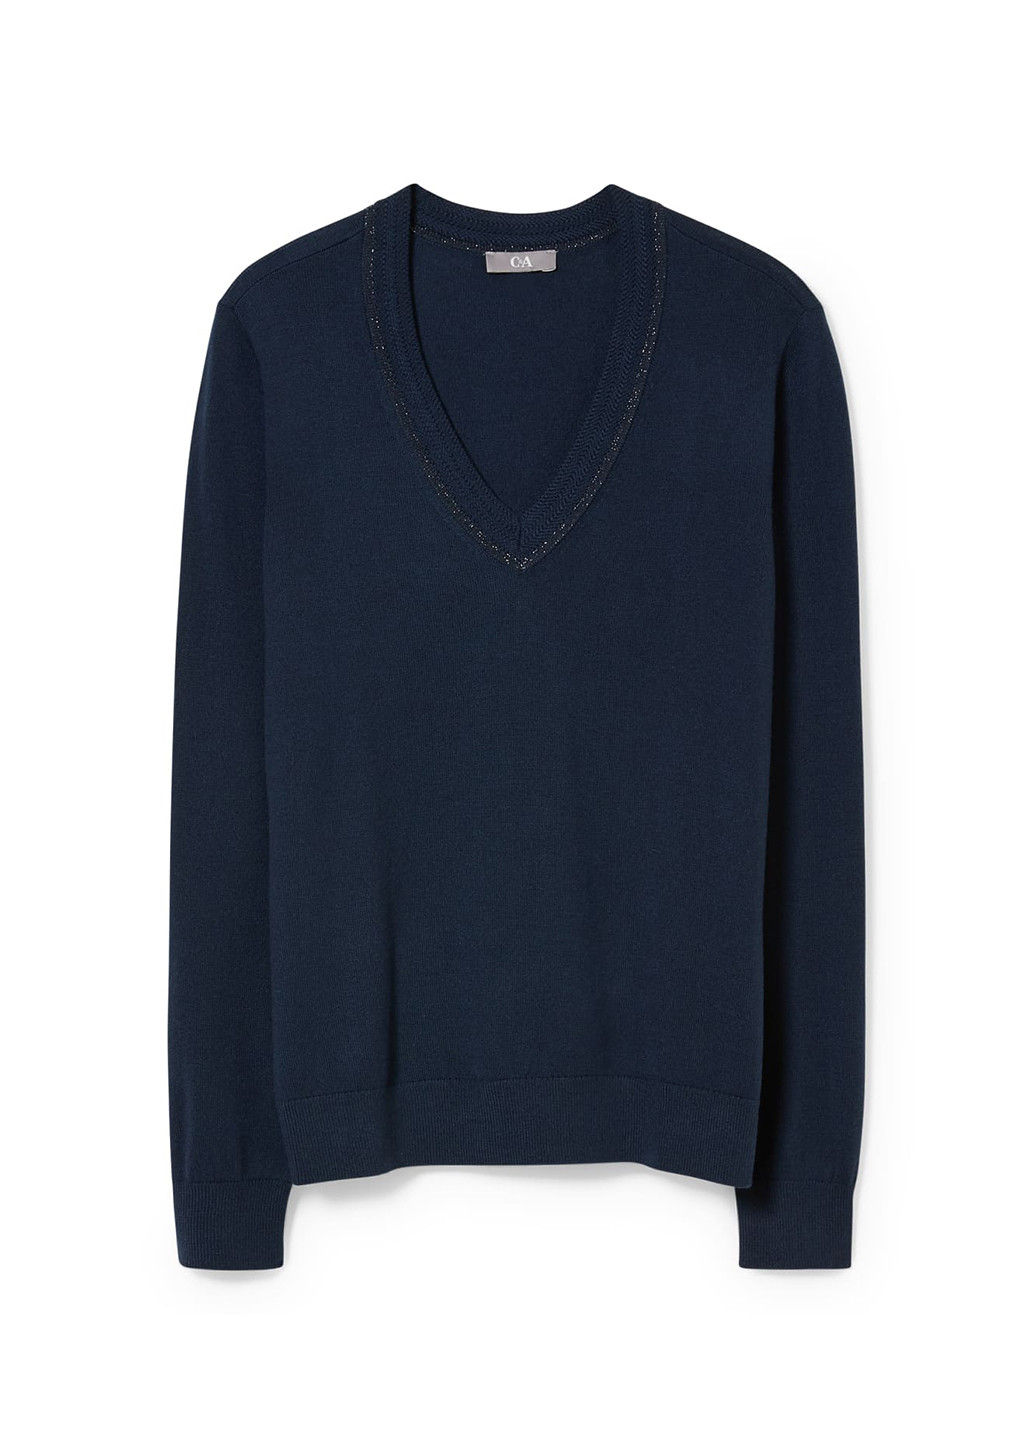 Темно-синий демисезонный пуловер пуловер C&A